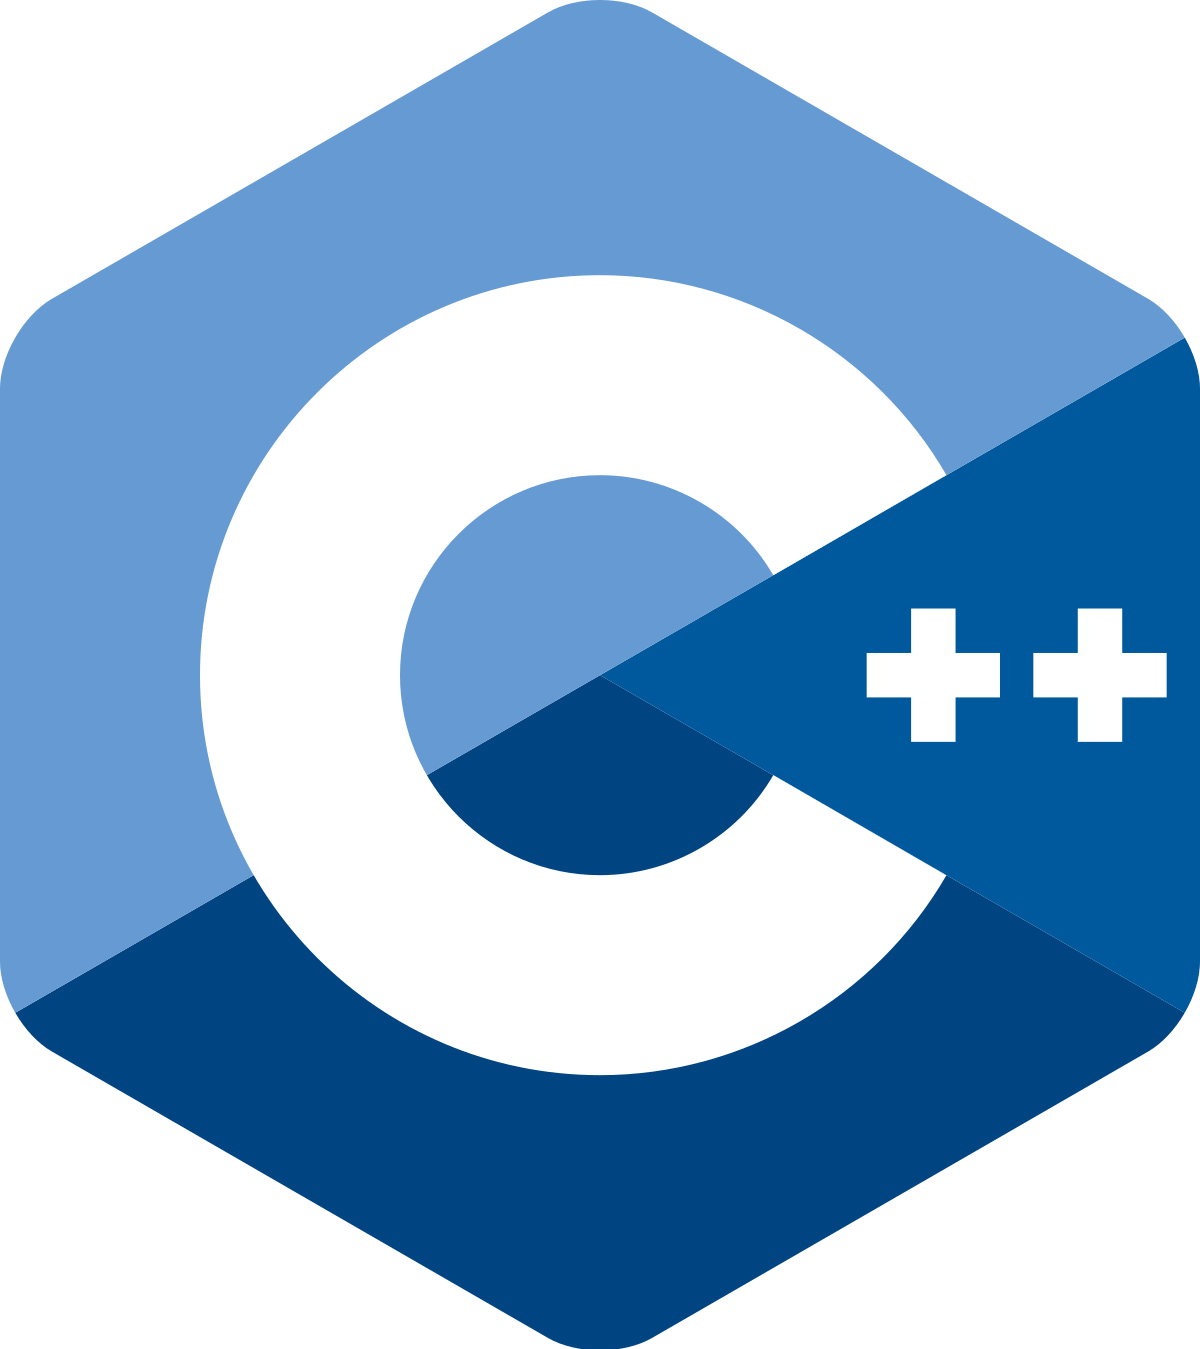 Programming Logo - C++